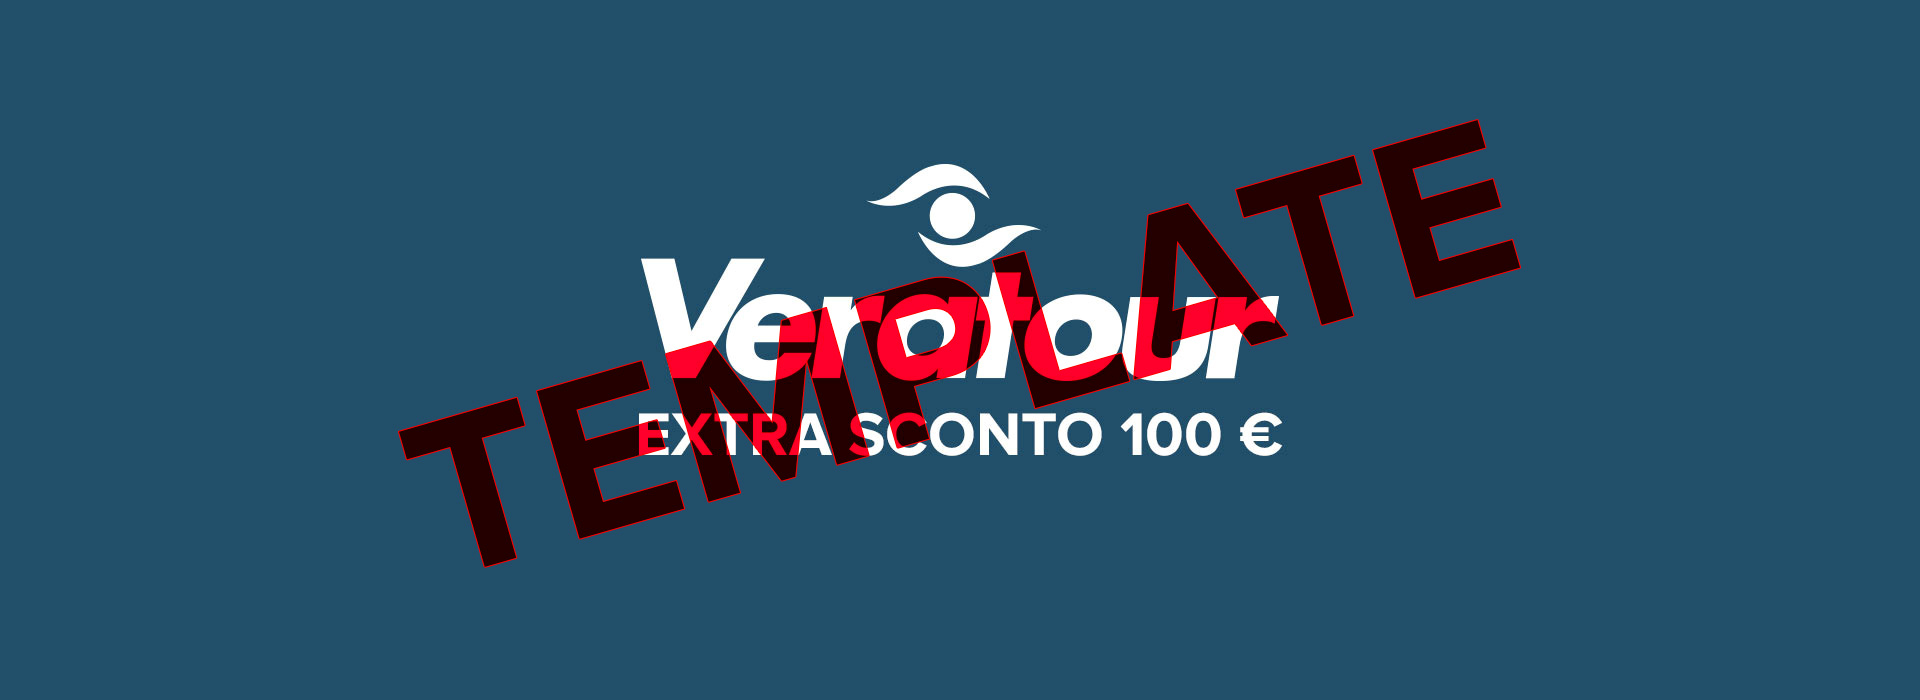 TEMPLATE: Promozione Veratour: Extra sconto 100 €